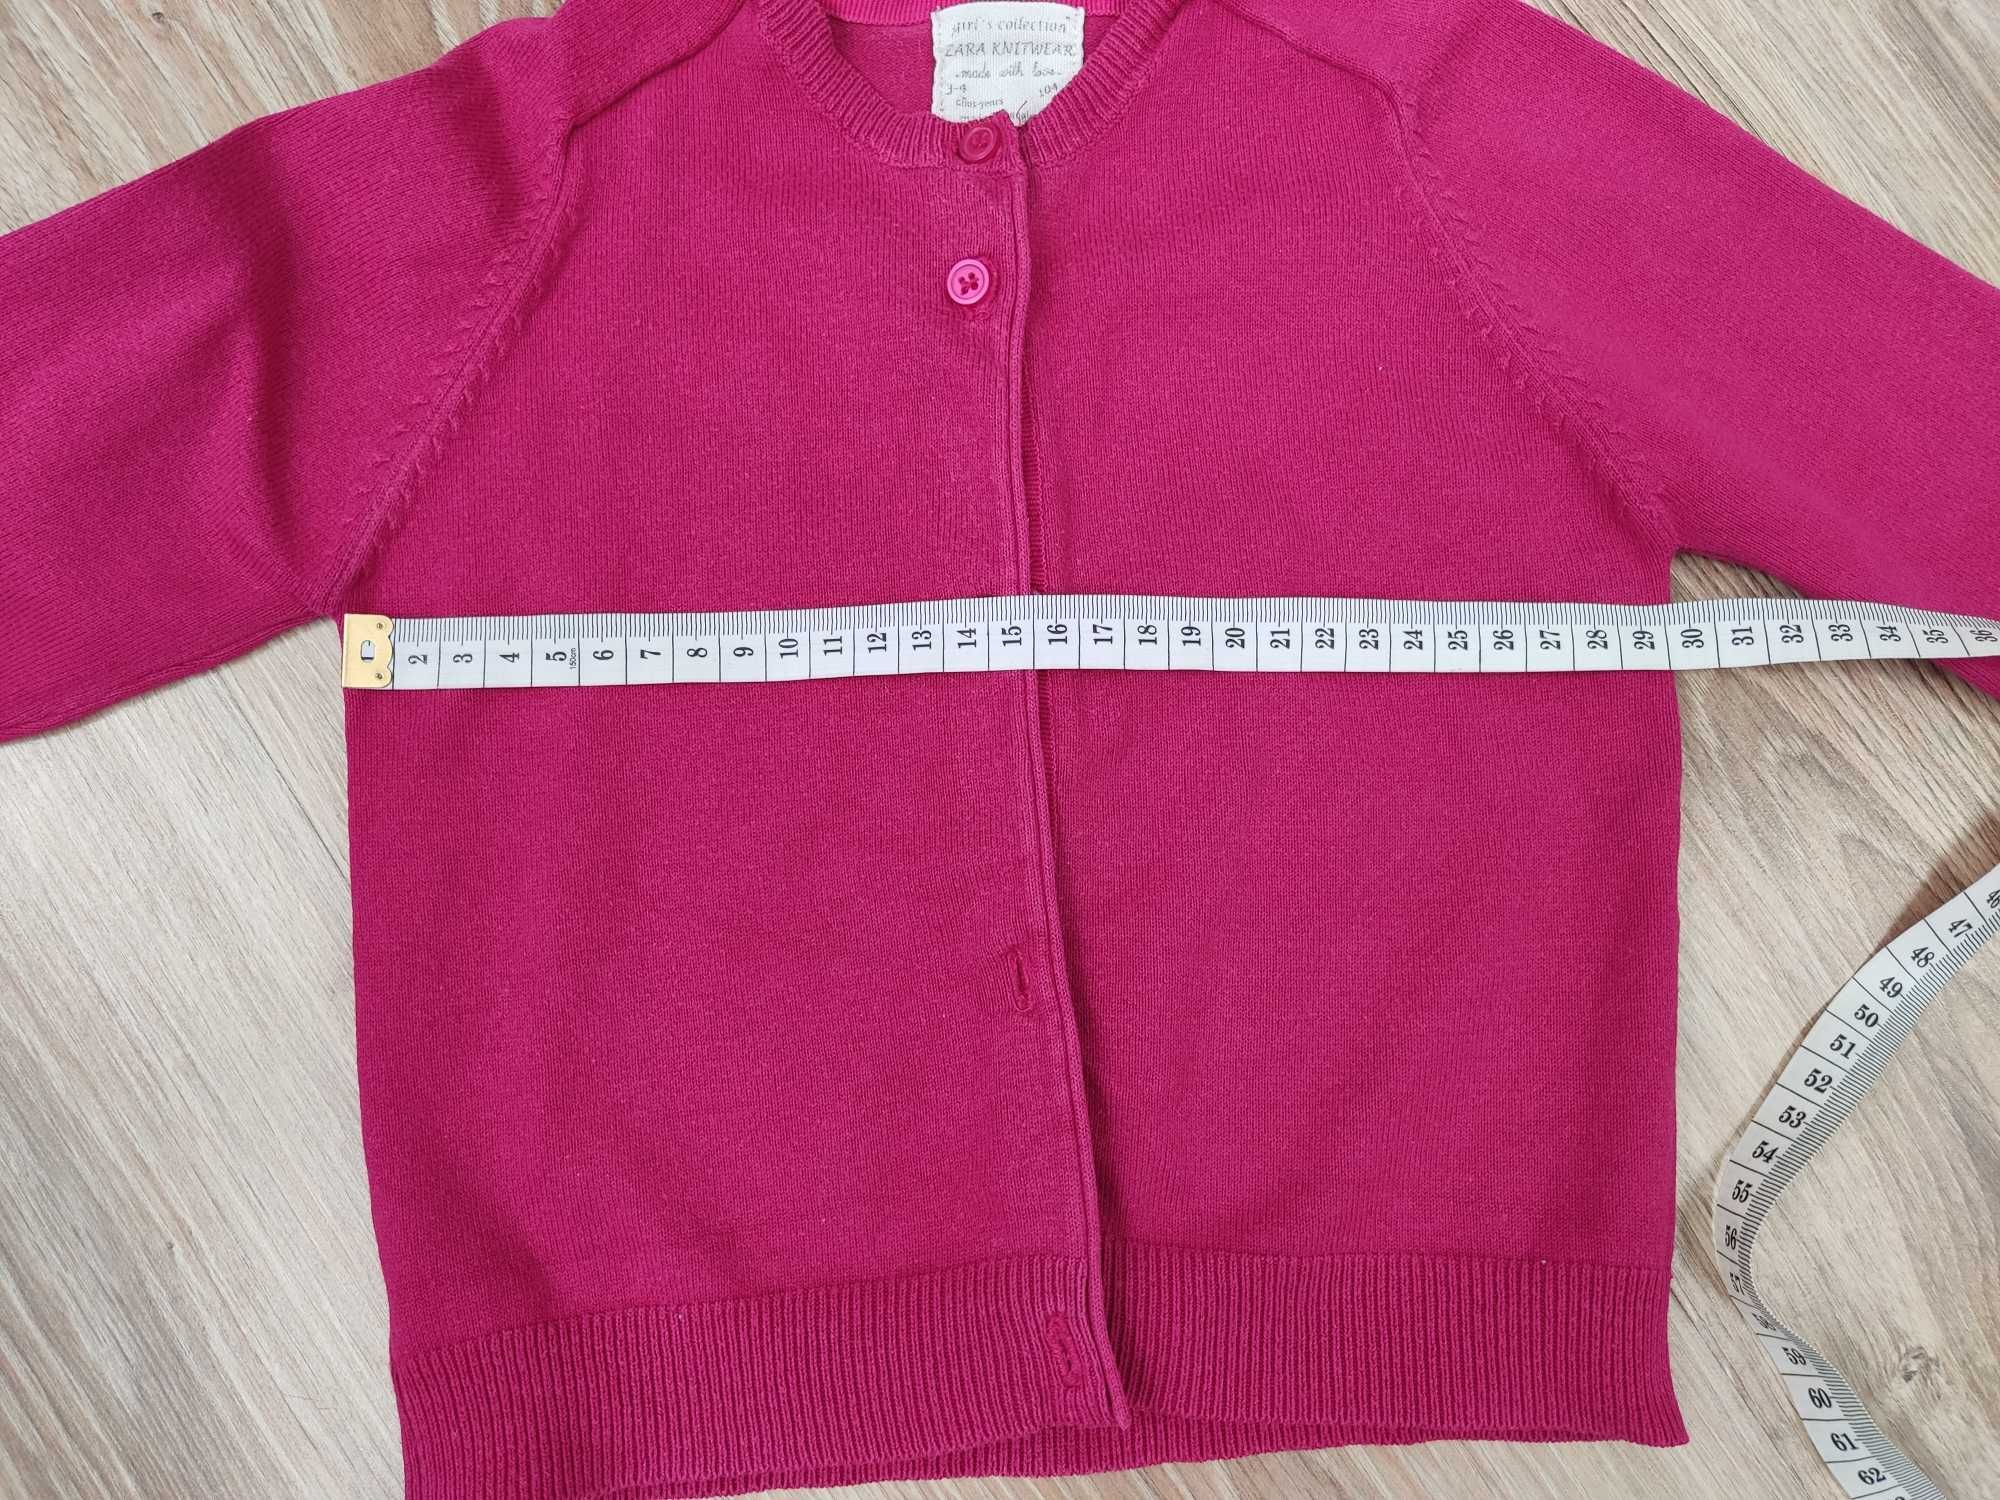 Sweterek zapinany Zara różowy rozmiar 104